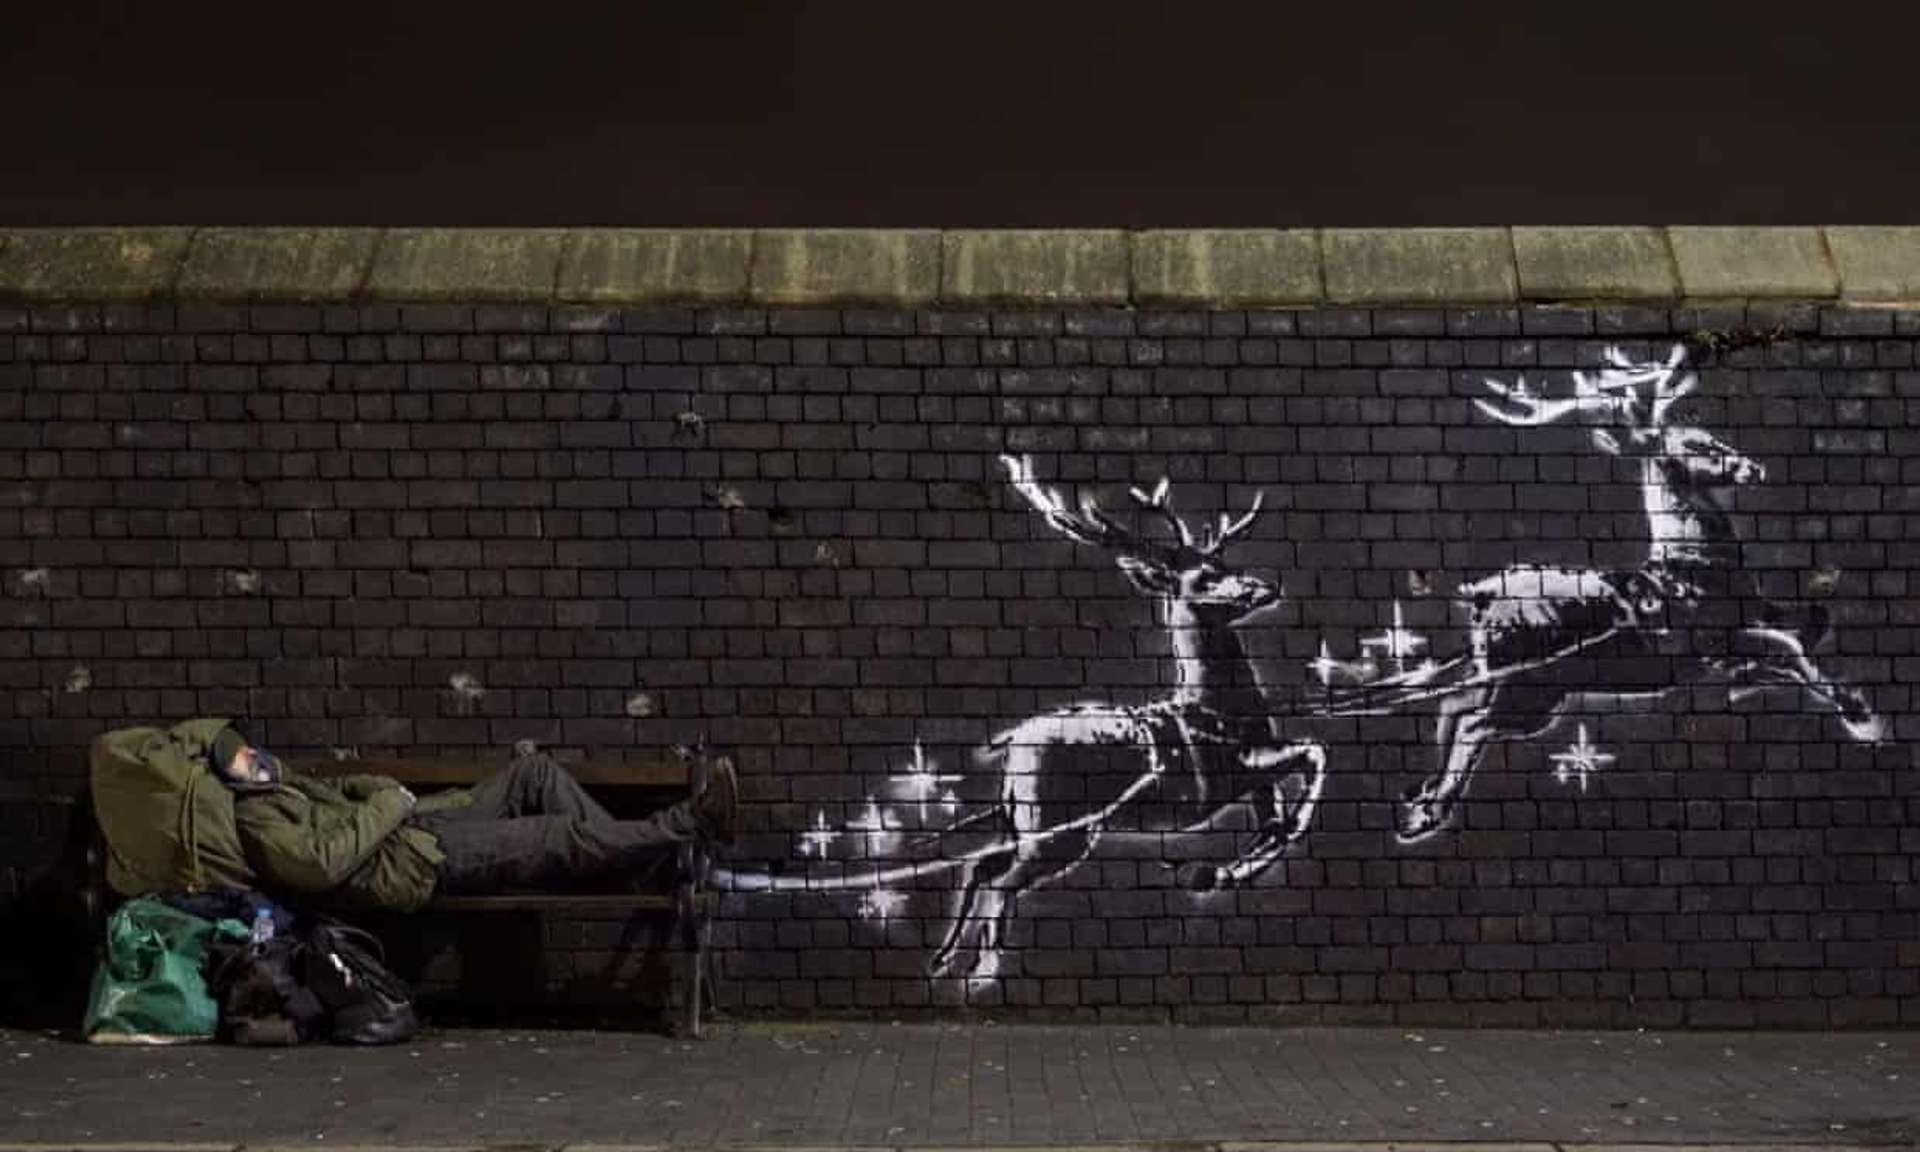 Christmas Mural by Banksy